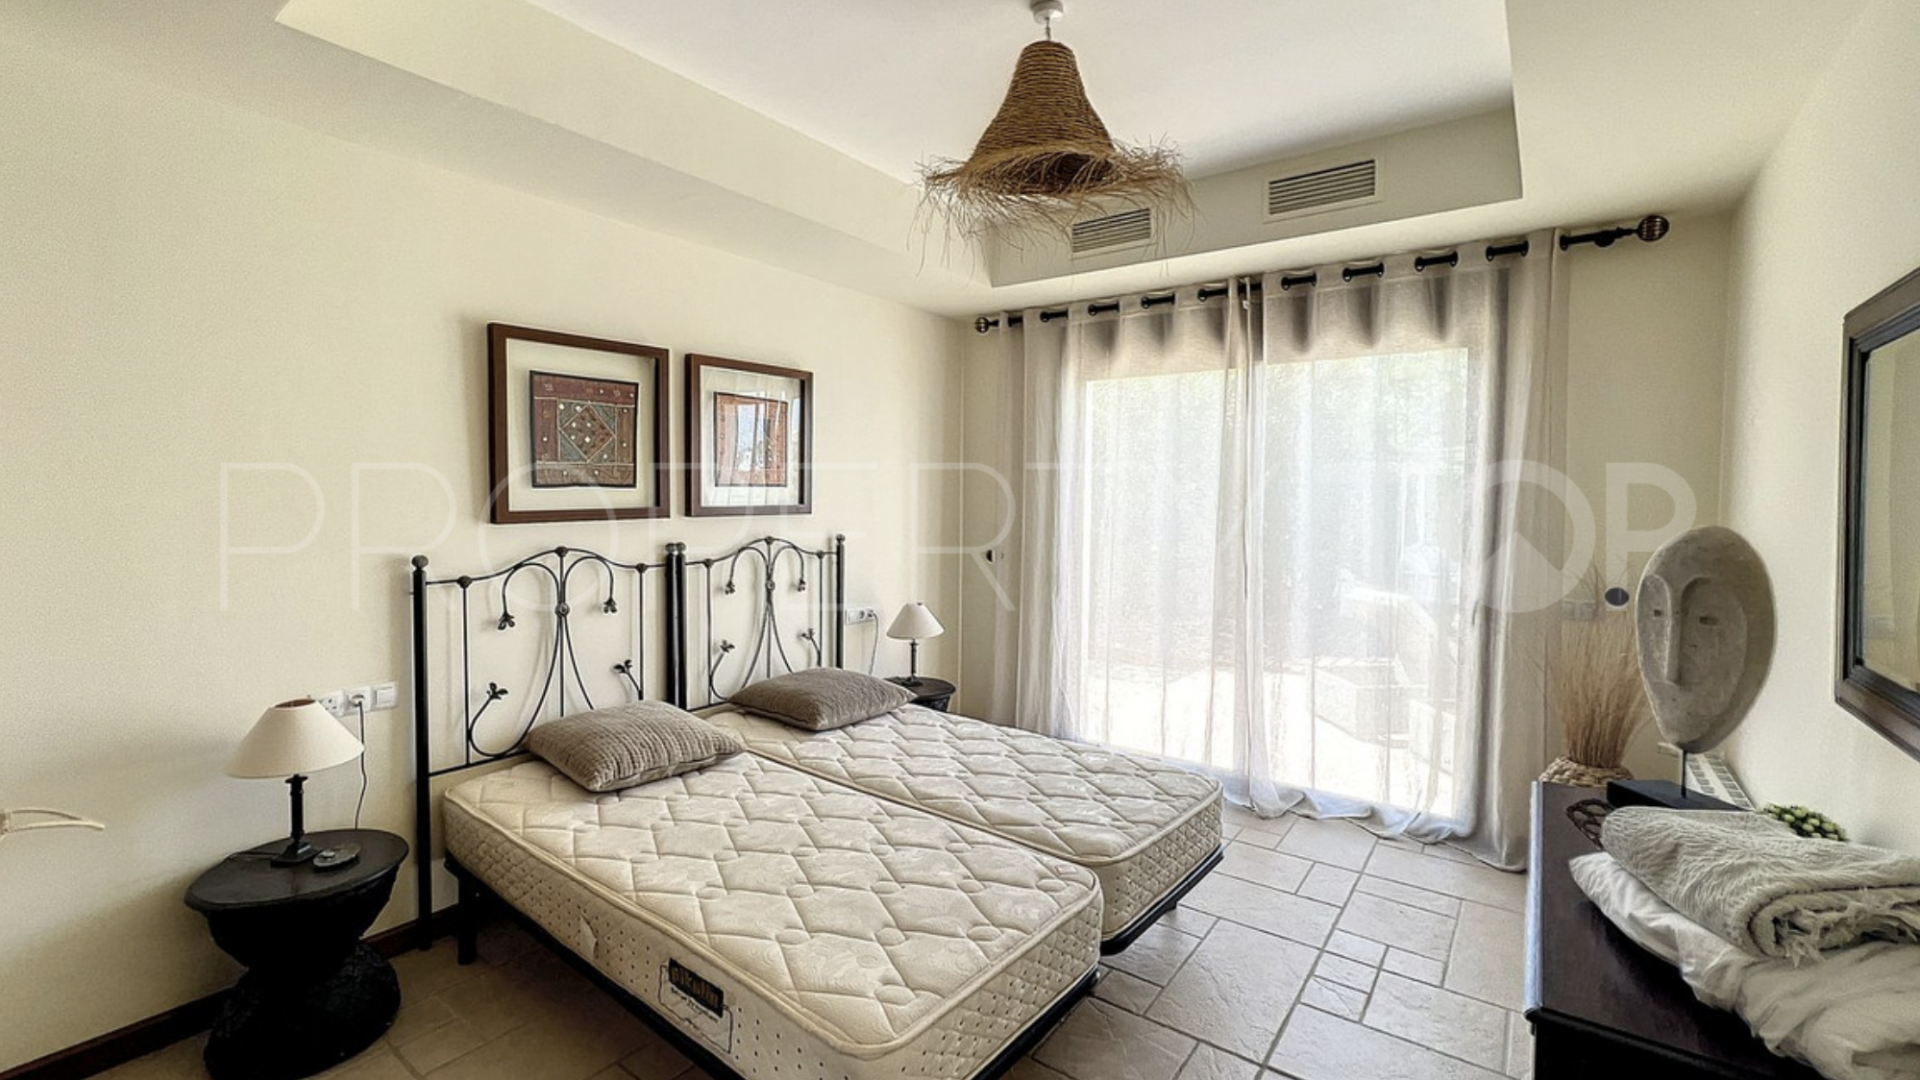 For sale villa in Valtocado with 4 bedrooms